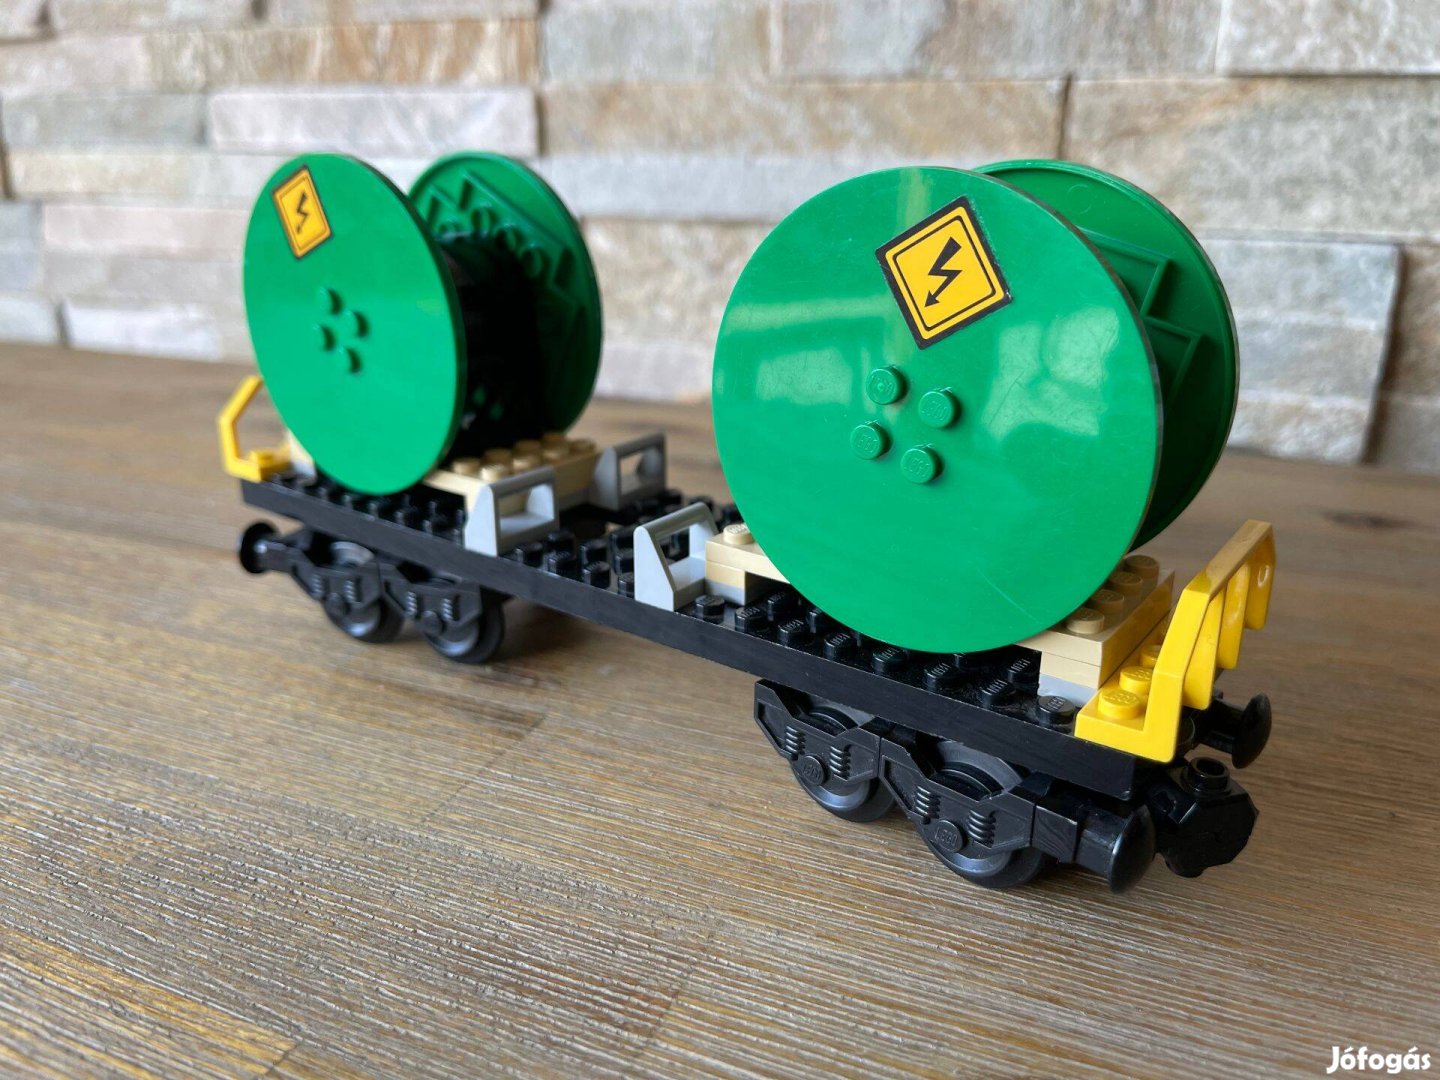 Lego vasuti kabeldobszallito vagon Lego vonat vasut vago